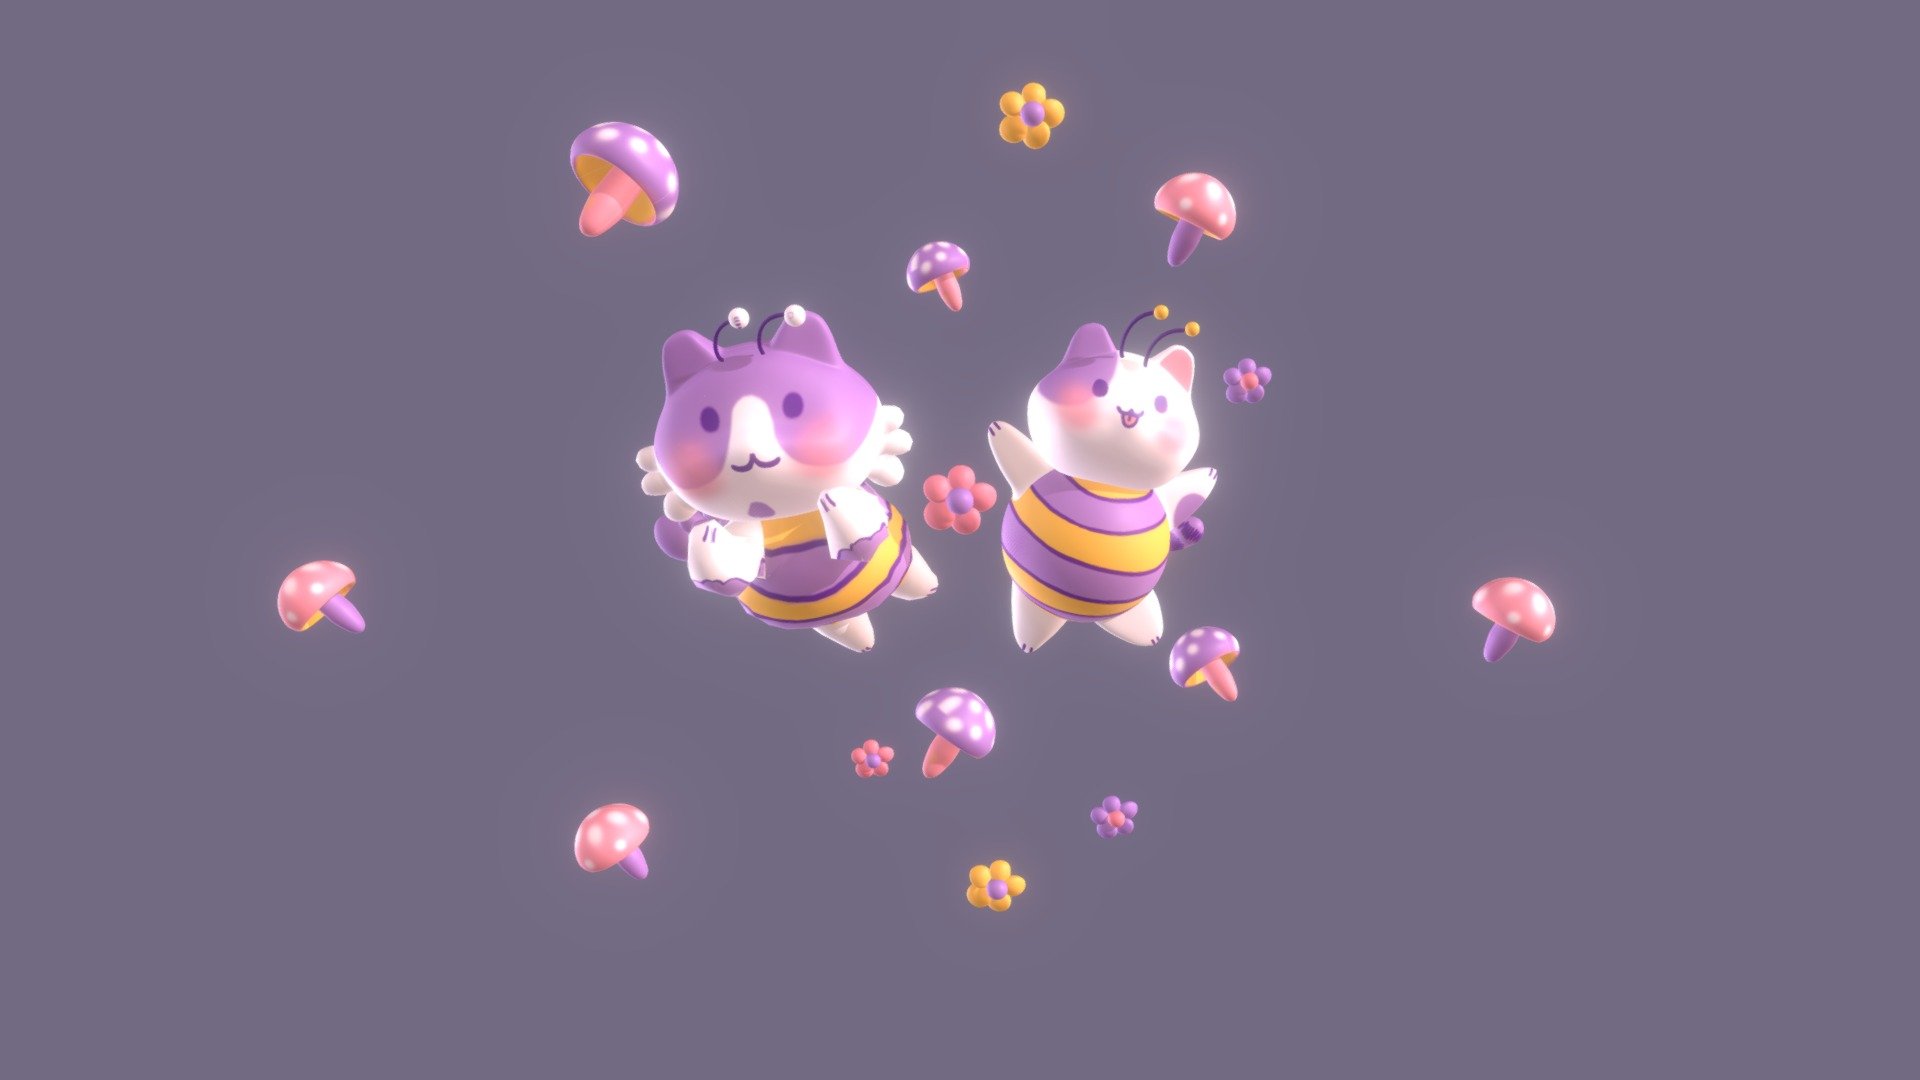 tiernos gatitos inspirados en la ilustracion de @mibatidouniverso :) - gatitos vestidos de abeja - Download Free 3D model by ignachaaa 3d model